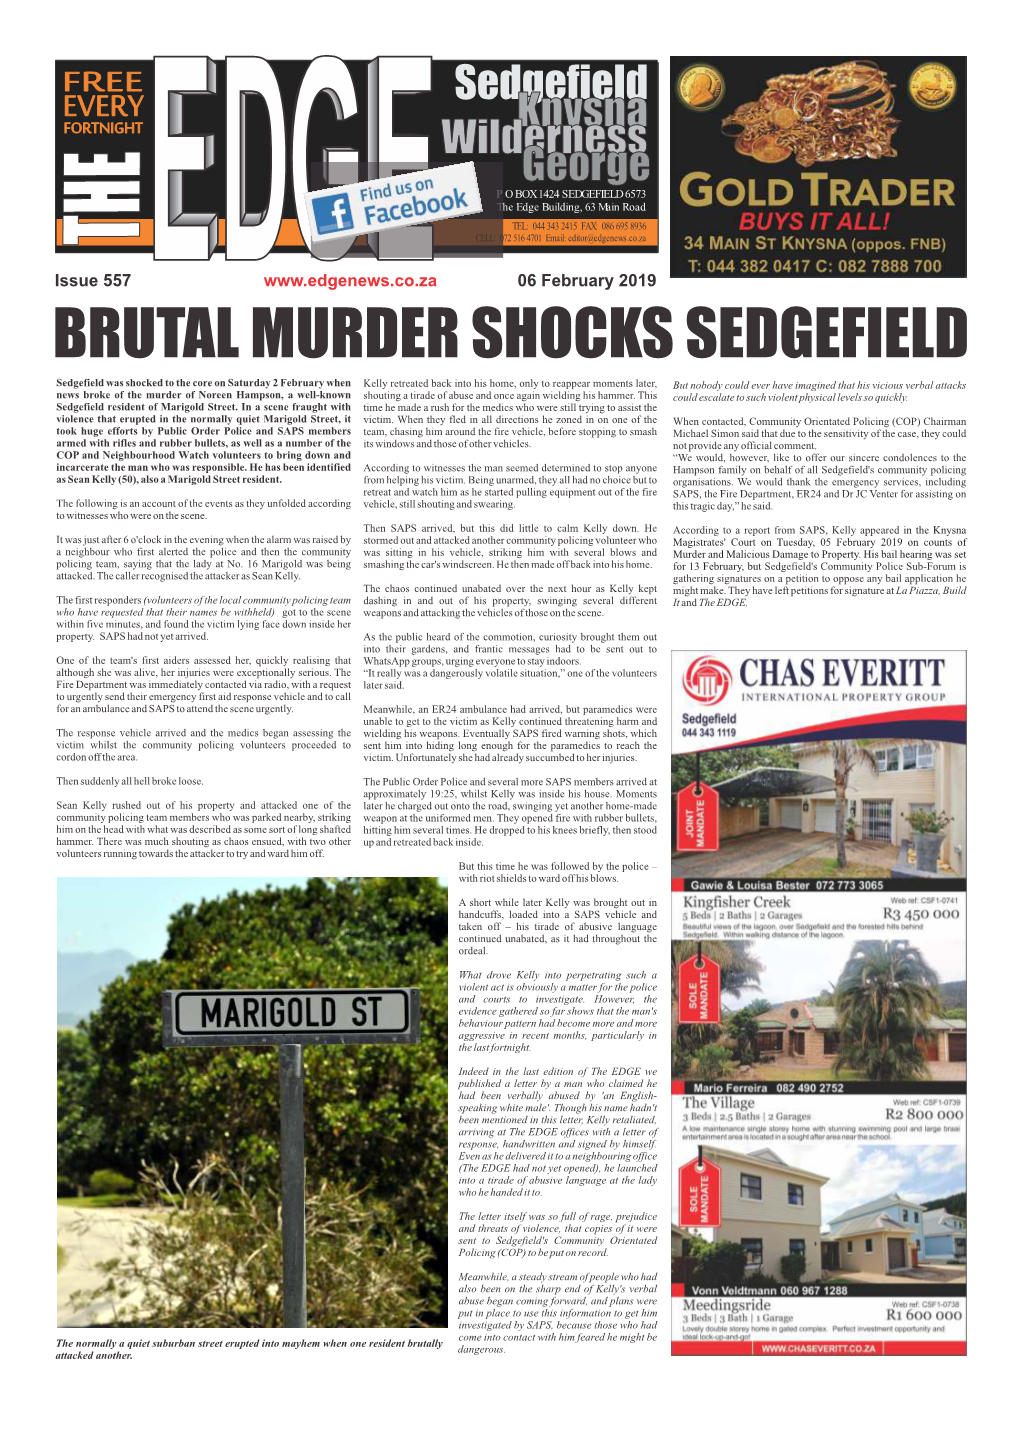 Brutal Murder Shocks Sedgefield